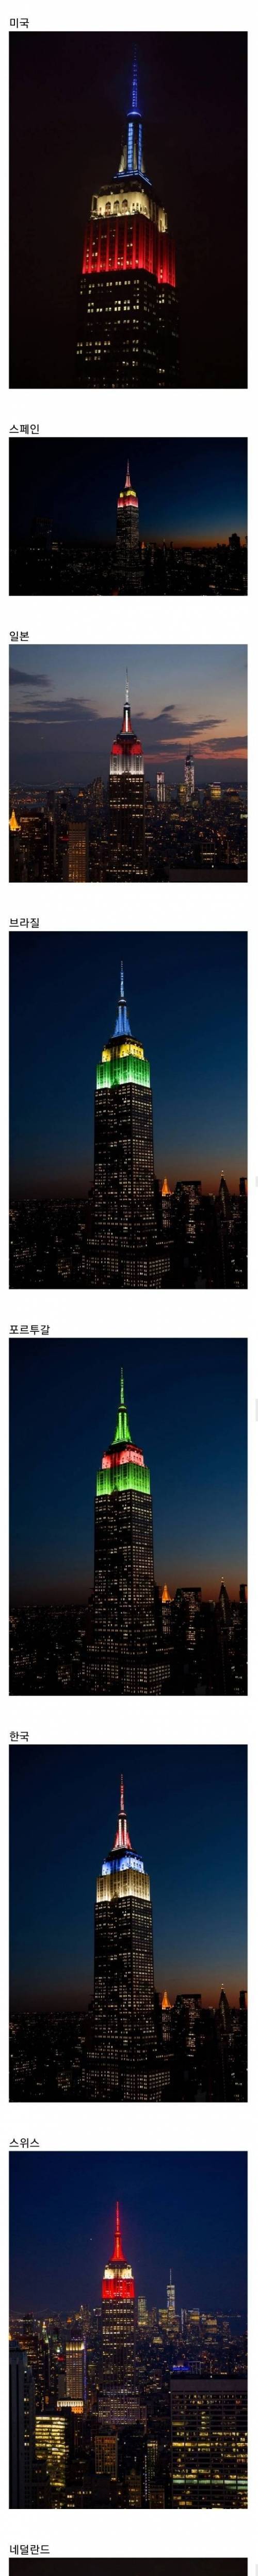 뉴욕 엠파이어 스테이트 빌딩 월드컵 16강 진출 국가 축하 조명...jpg